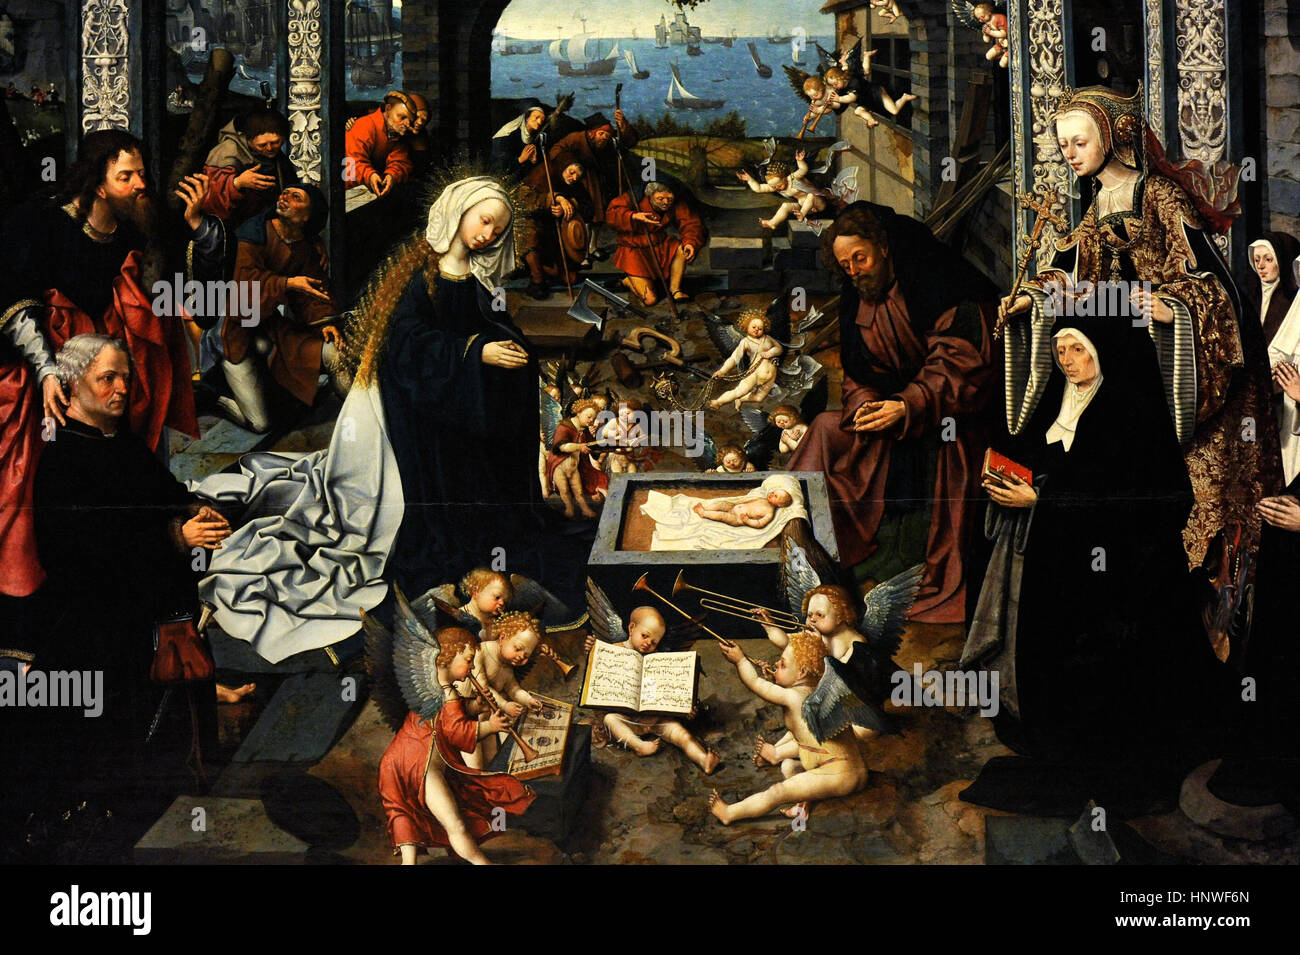 Jacob Cornelisz van Oostsanen (ca.1470-1533). Peintre flamand. L'Adoration de l'enfant, 1512. Détail. Collection de Bourbon. Musée national de Capodimonte. Naples. L'Italie. Banque D'Images